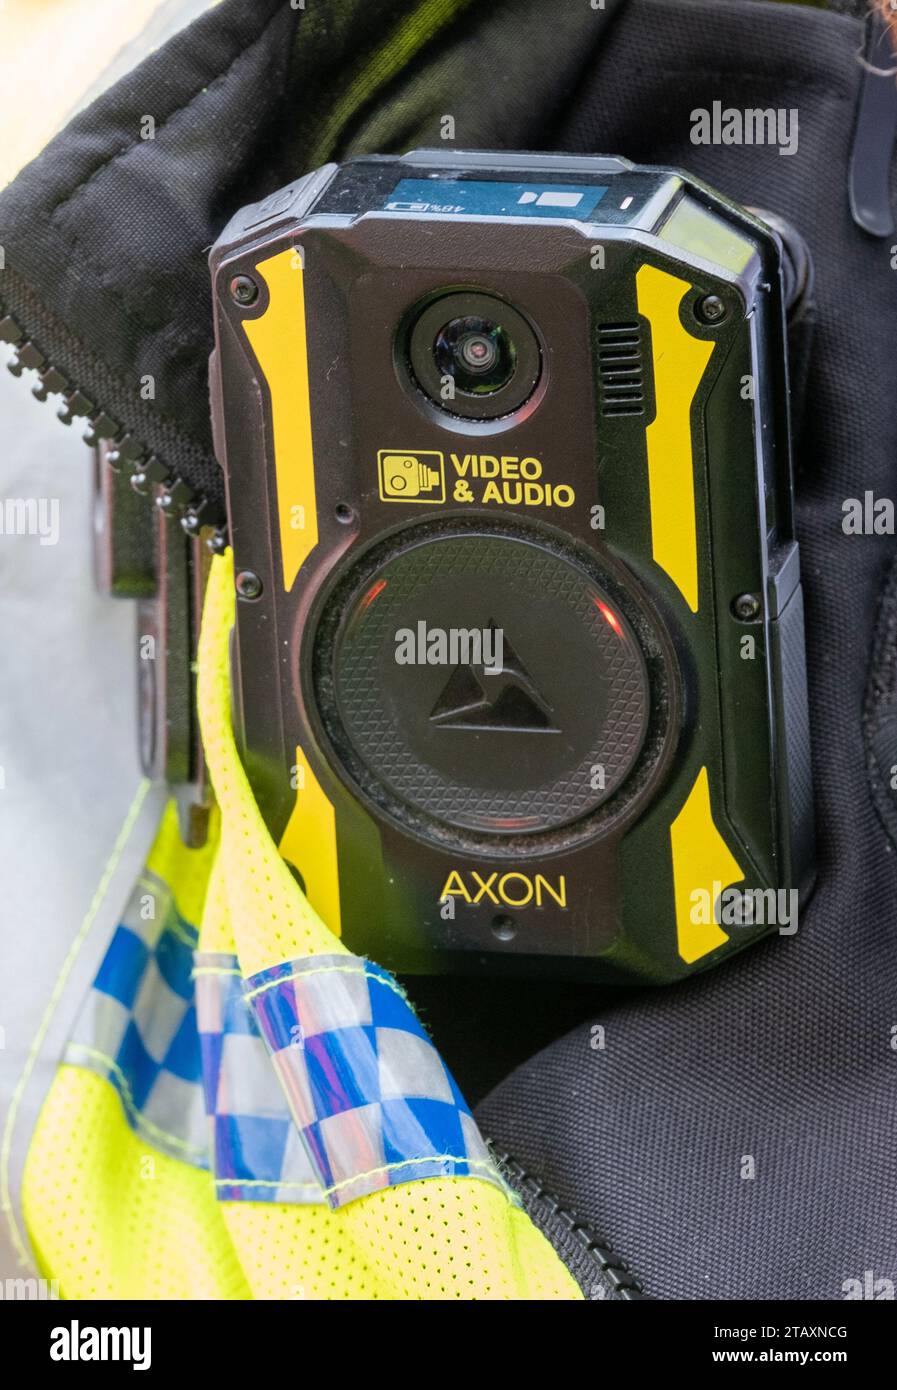 Videocamera indossata dagli agenti di polizia di Londra per tenere al sicuro gli agenti, consentendo la consapevolezza della situazione, migliorando le relazioni con la comunità e fornendo prove. Foto Stock